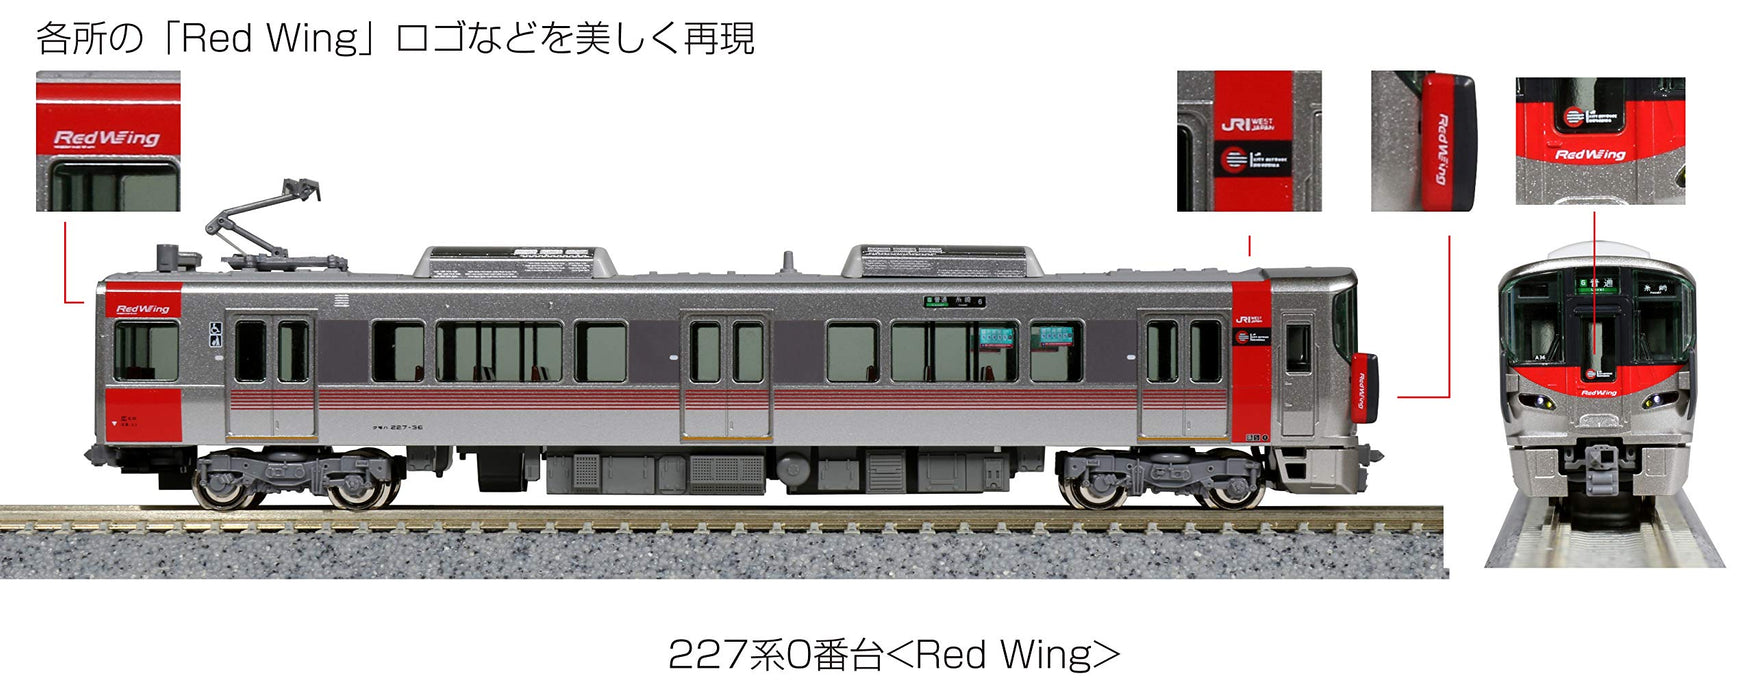 Kato Spur N 6-Wagen-Set 227 Serie 0 Red Wing 10-1629 Eisenbahnzugmodell